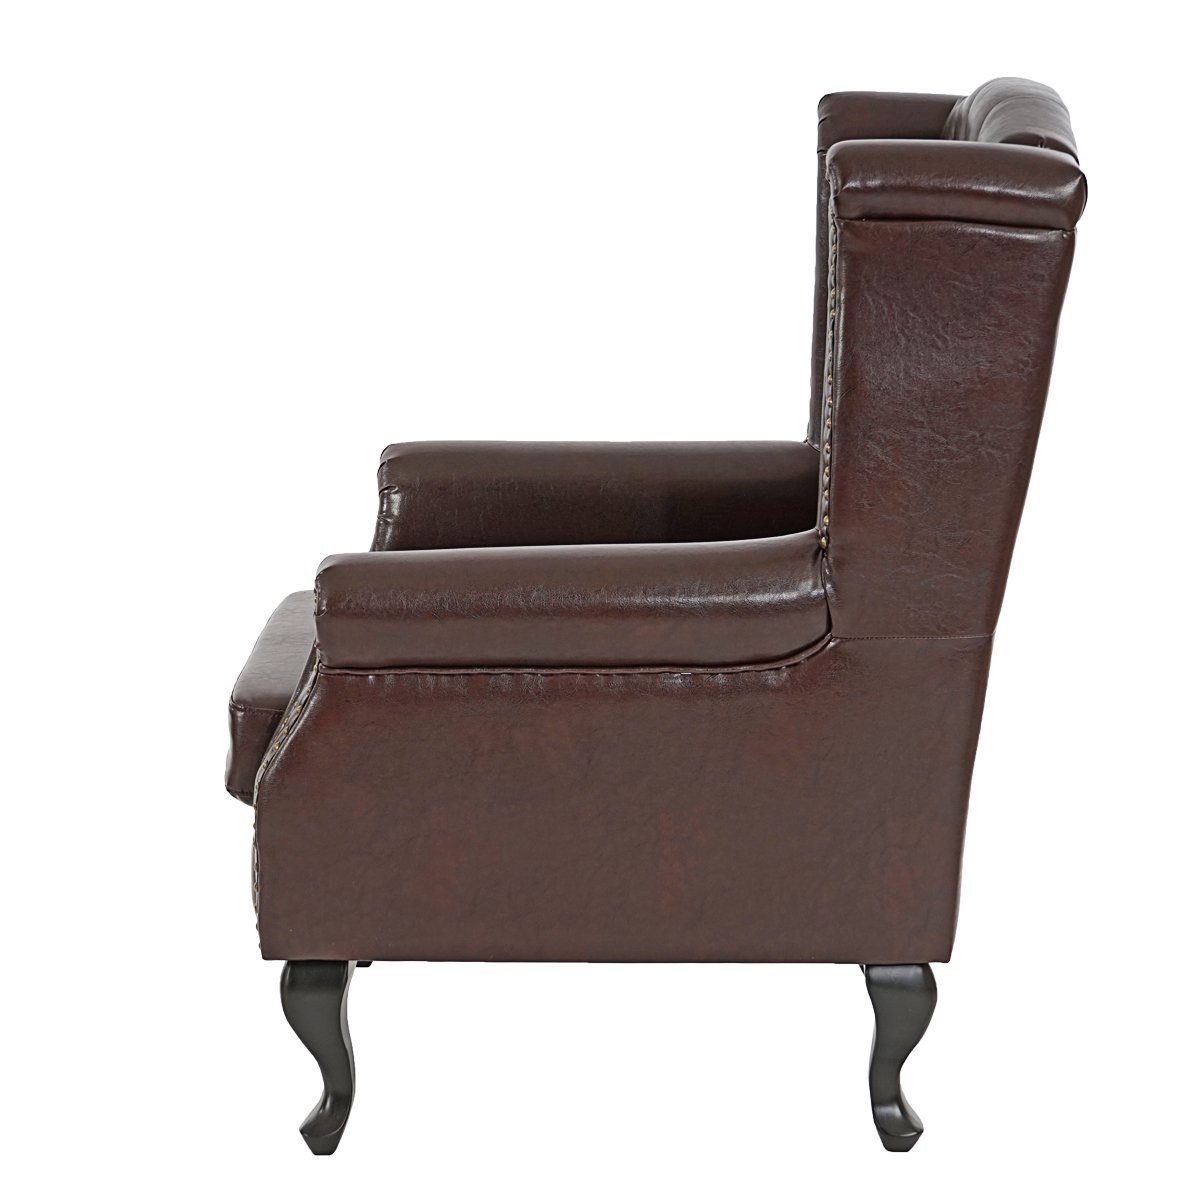 MCW Relaxsessel Oxford, Sitzpolster mit antik-braun Reißverschluss, Filz-Bodenschoner, Hoher Sitzkomfort